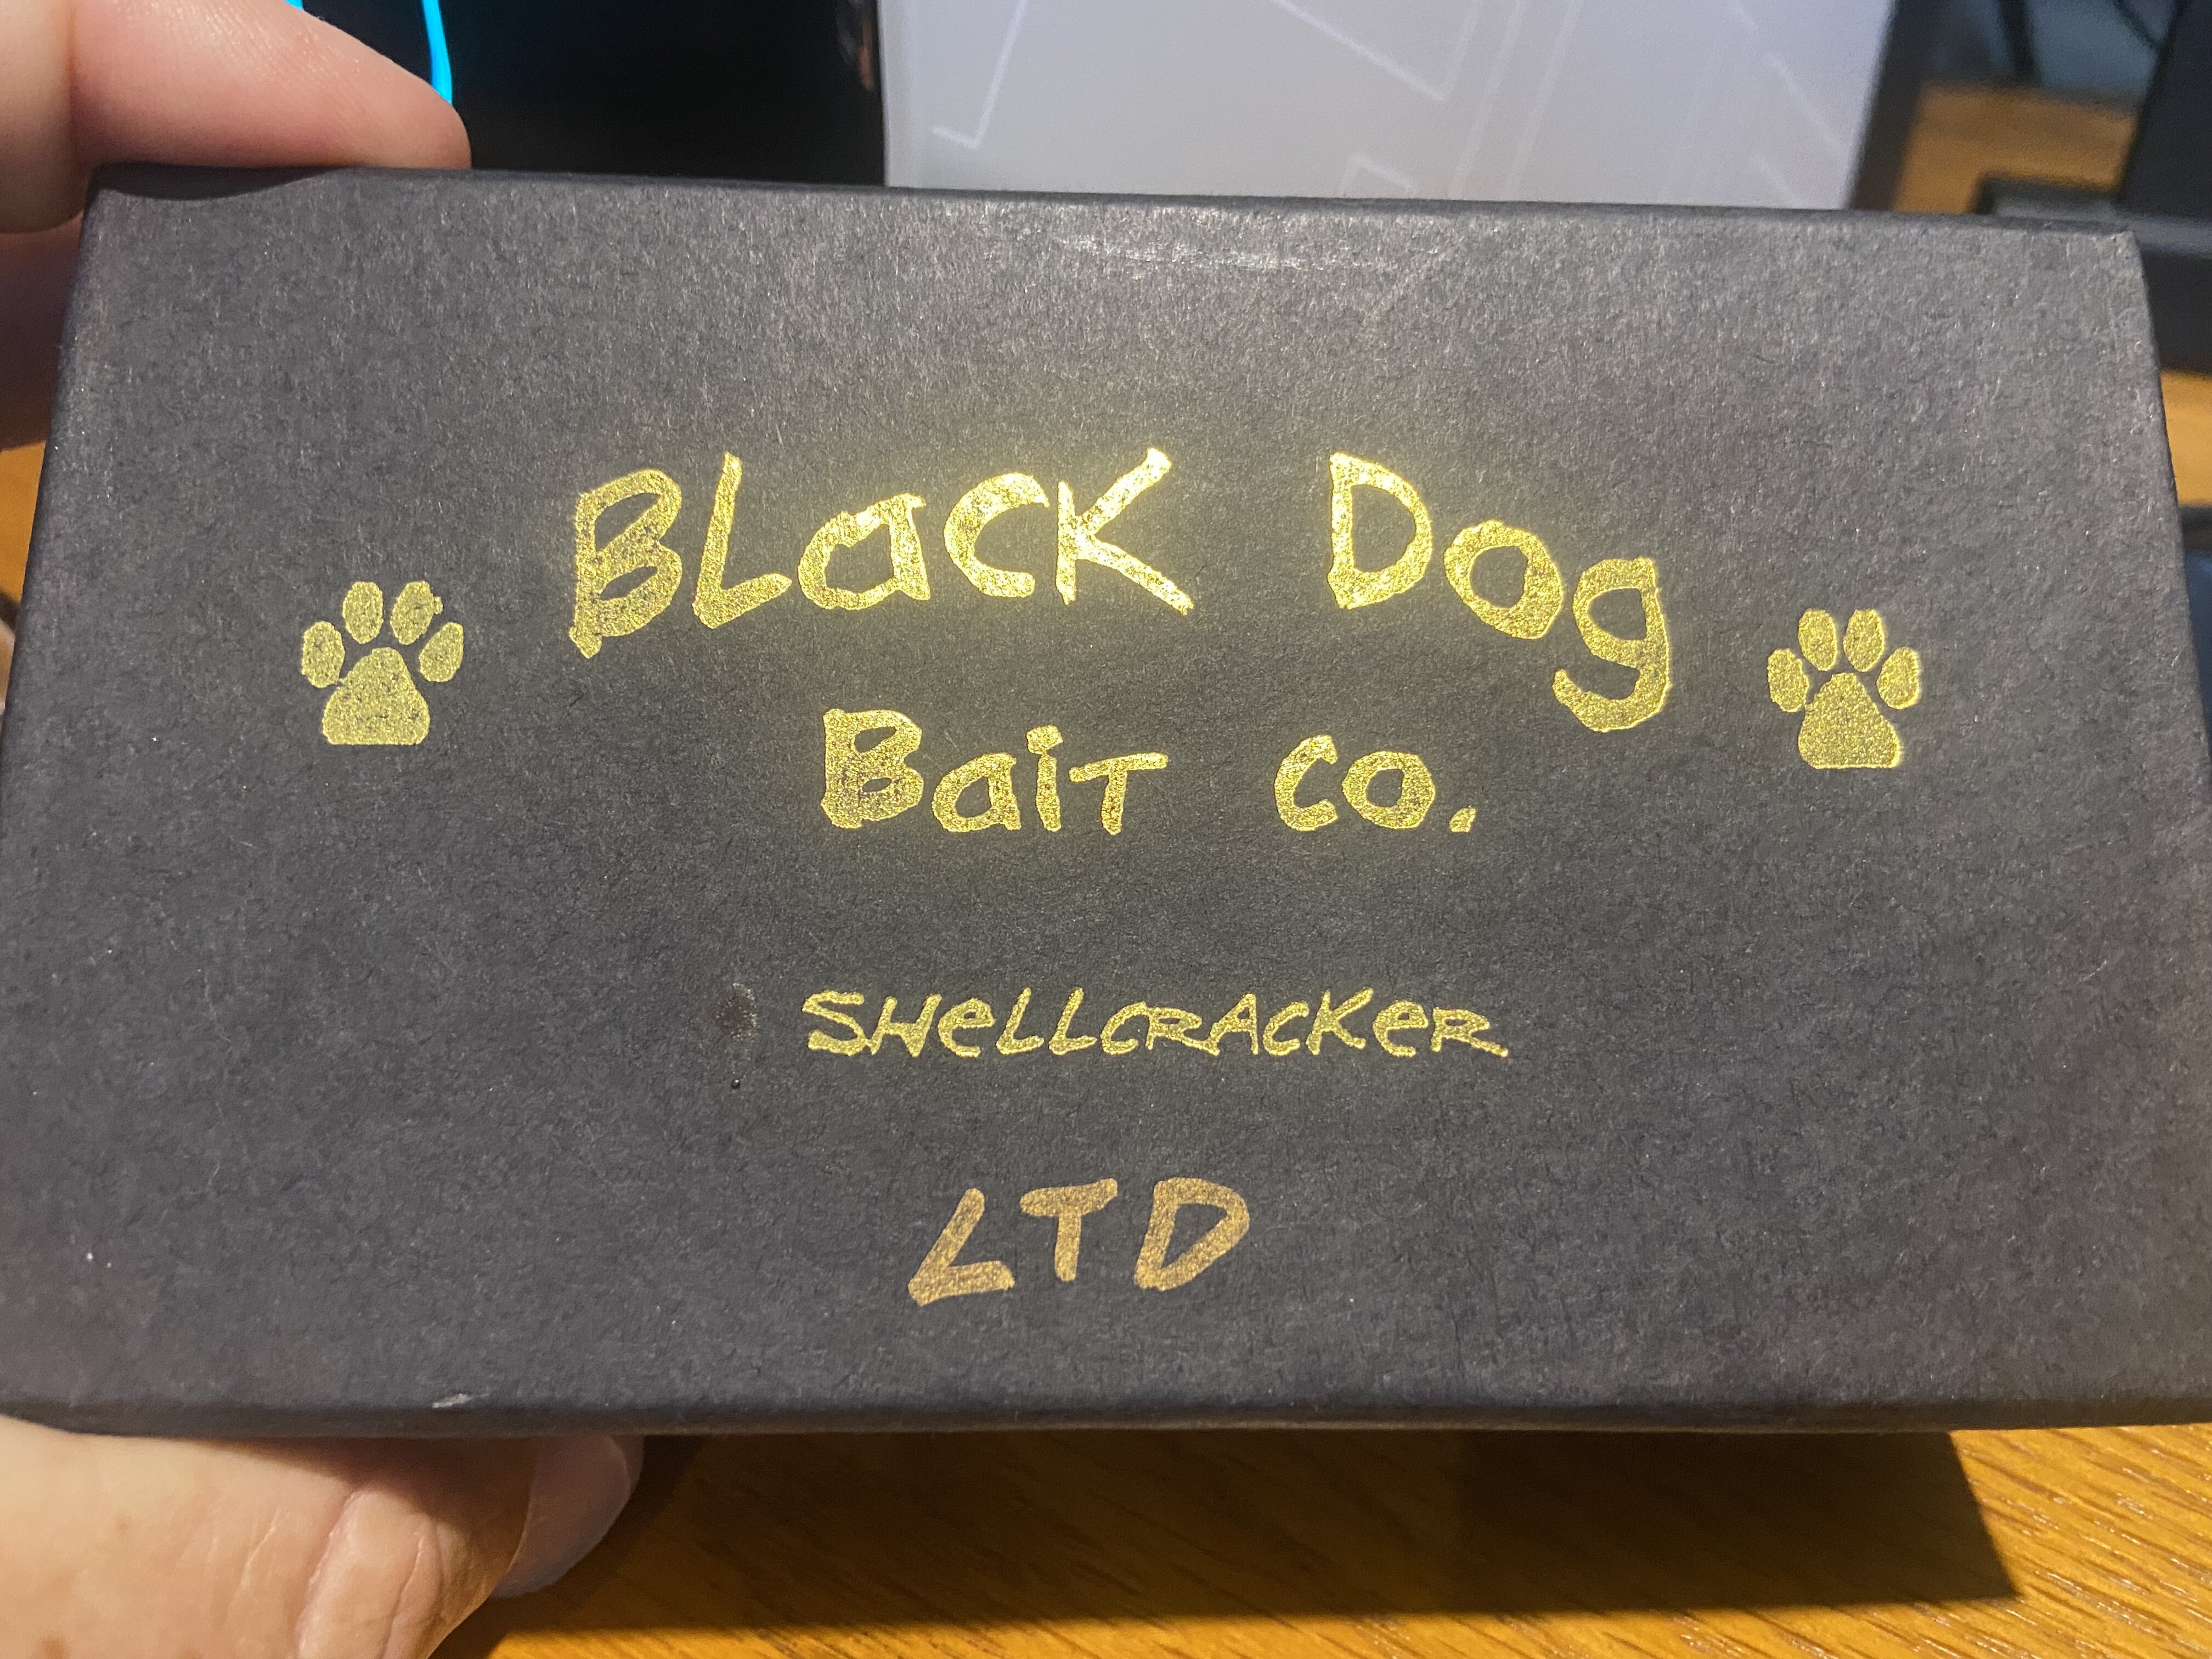 Selling Black Dog Bait Company G2 Shellcracker Lot - Black Market - Swimbait  Underground